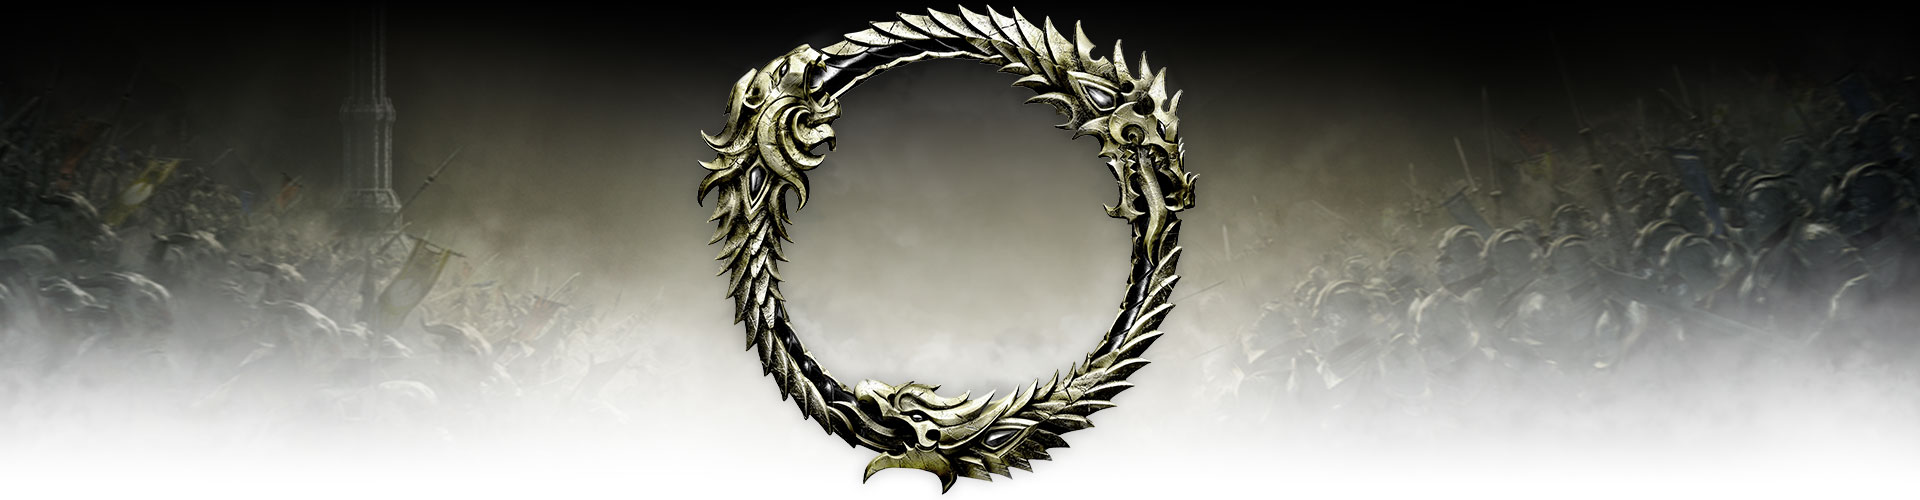 Şiddetli bir savaş alanının üstüne yerleştirilmiş metal bir Ouroboros sembolü.